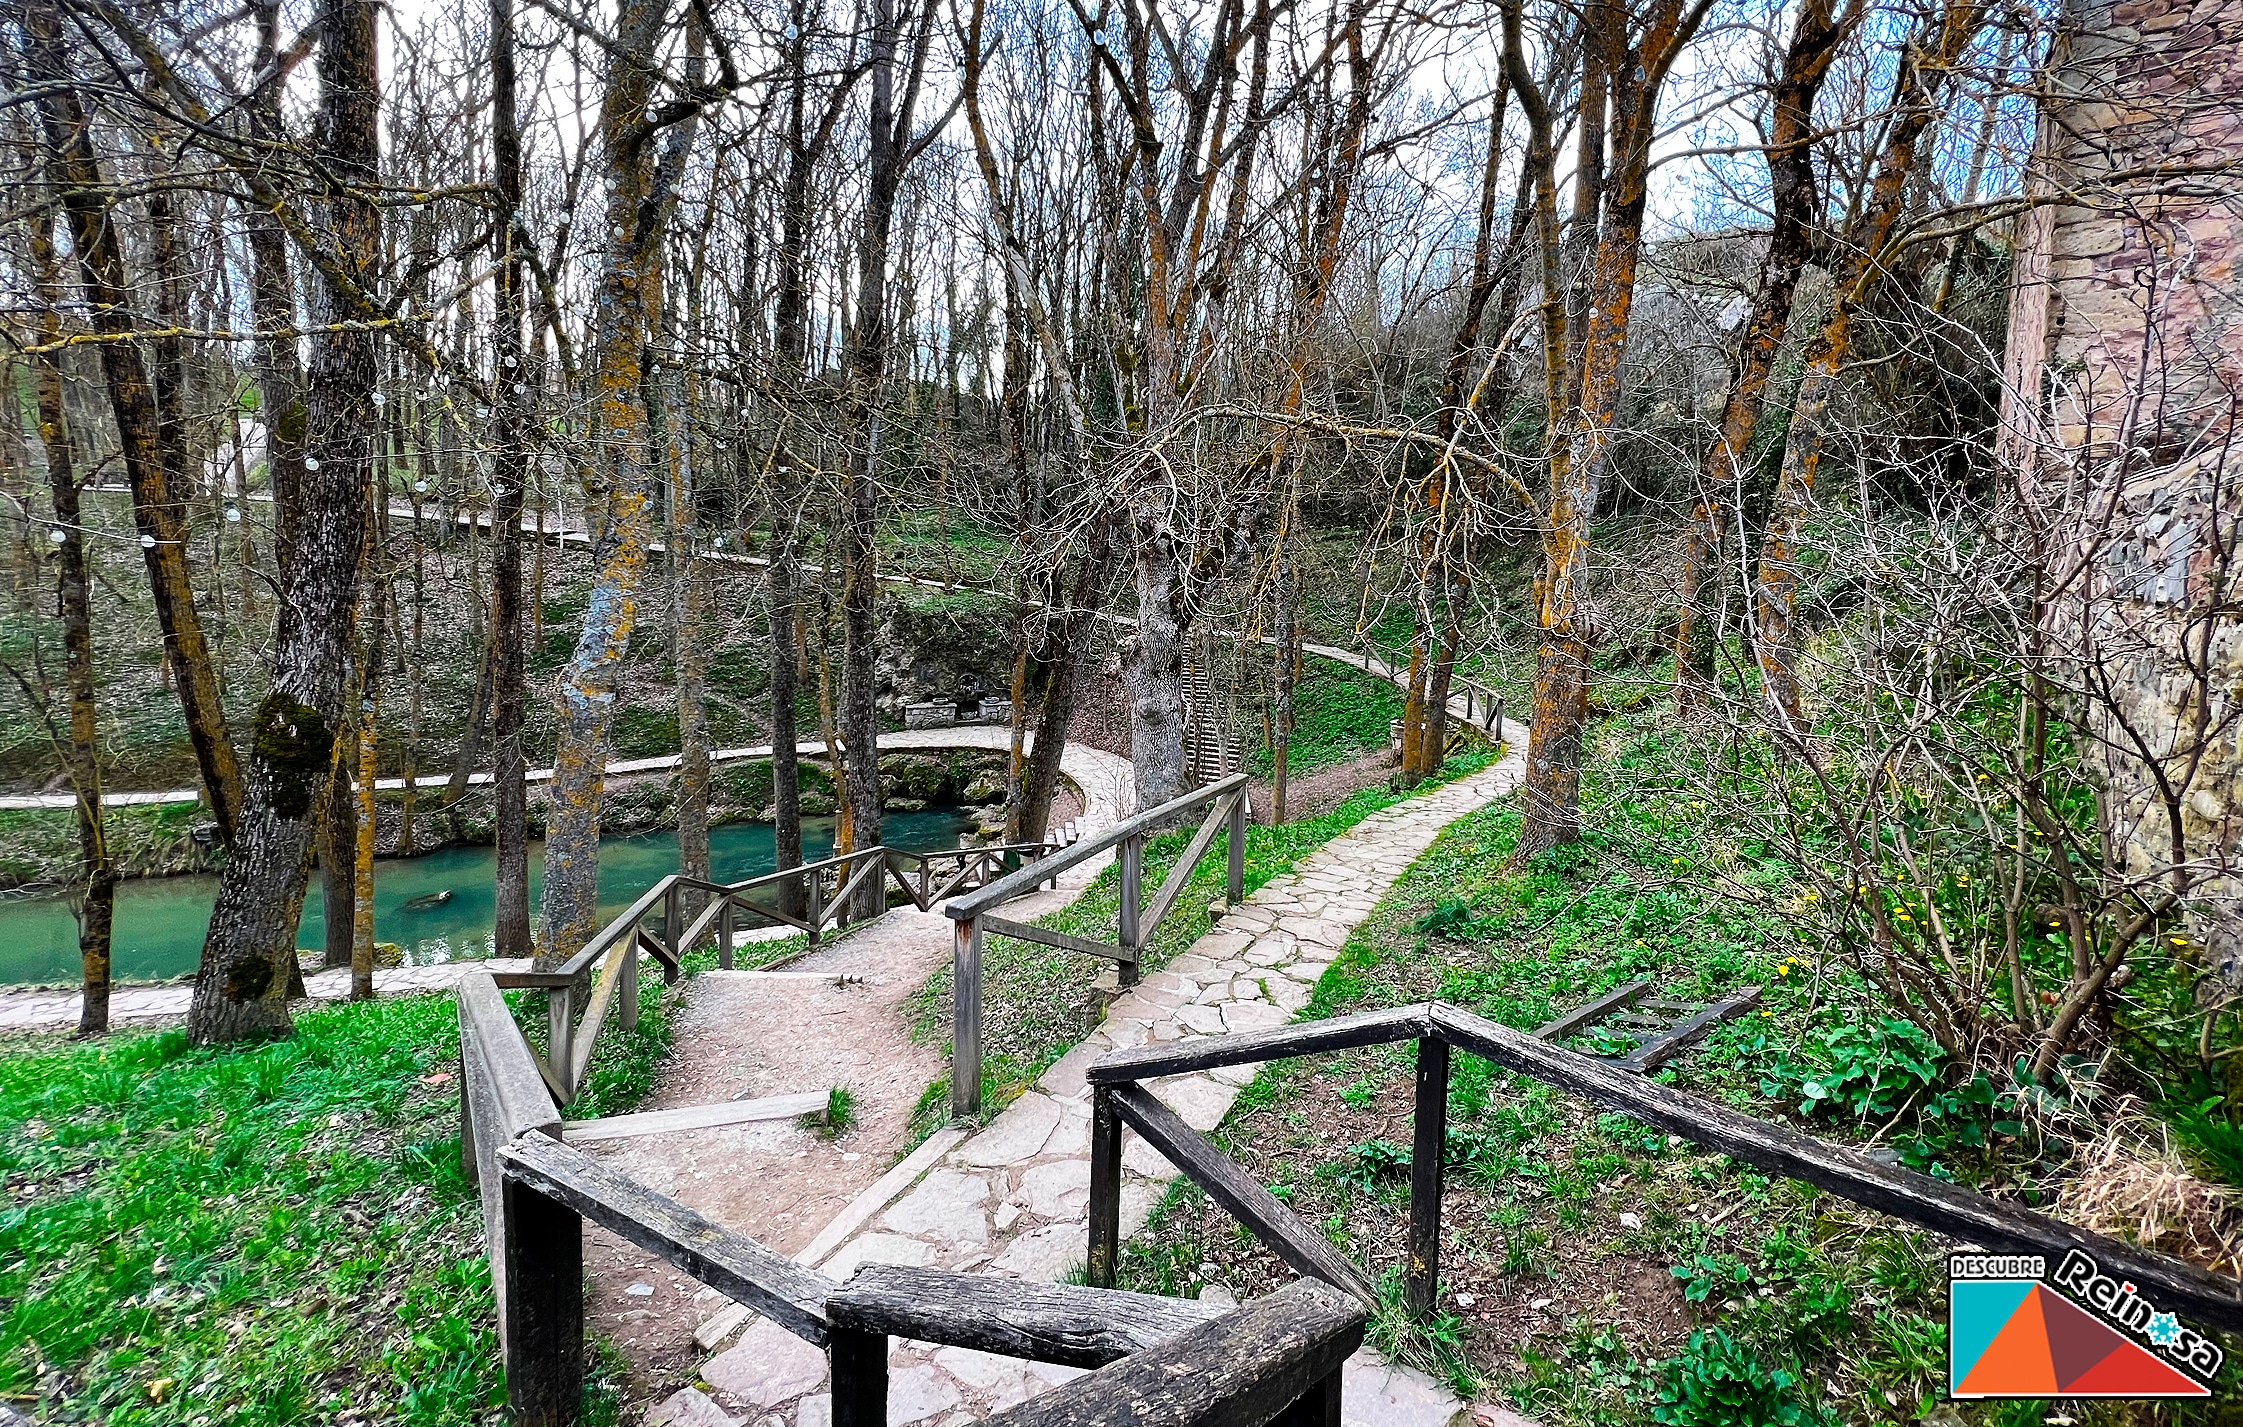 Fontibre - Nacimiento del Río Ebro